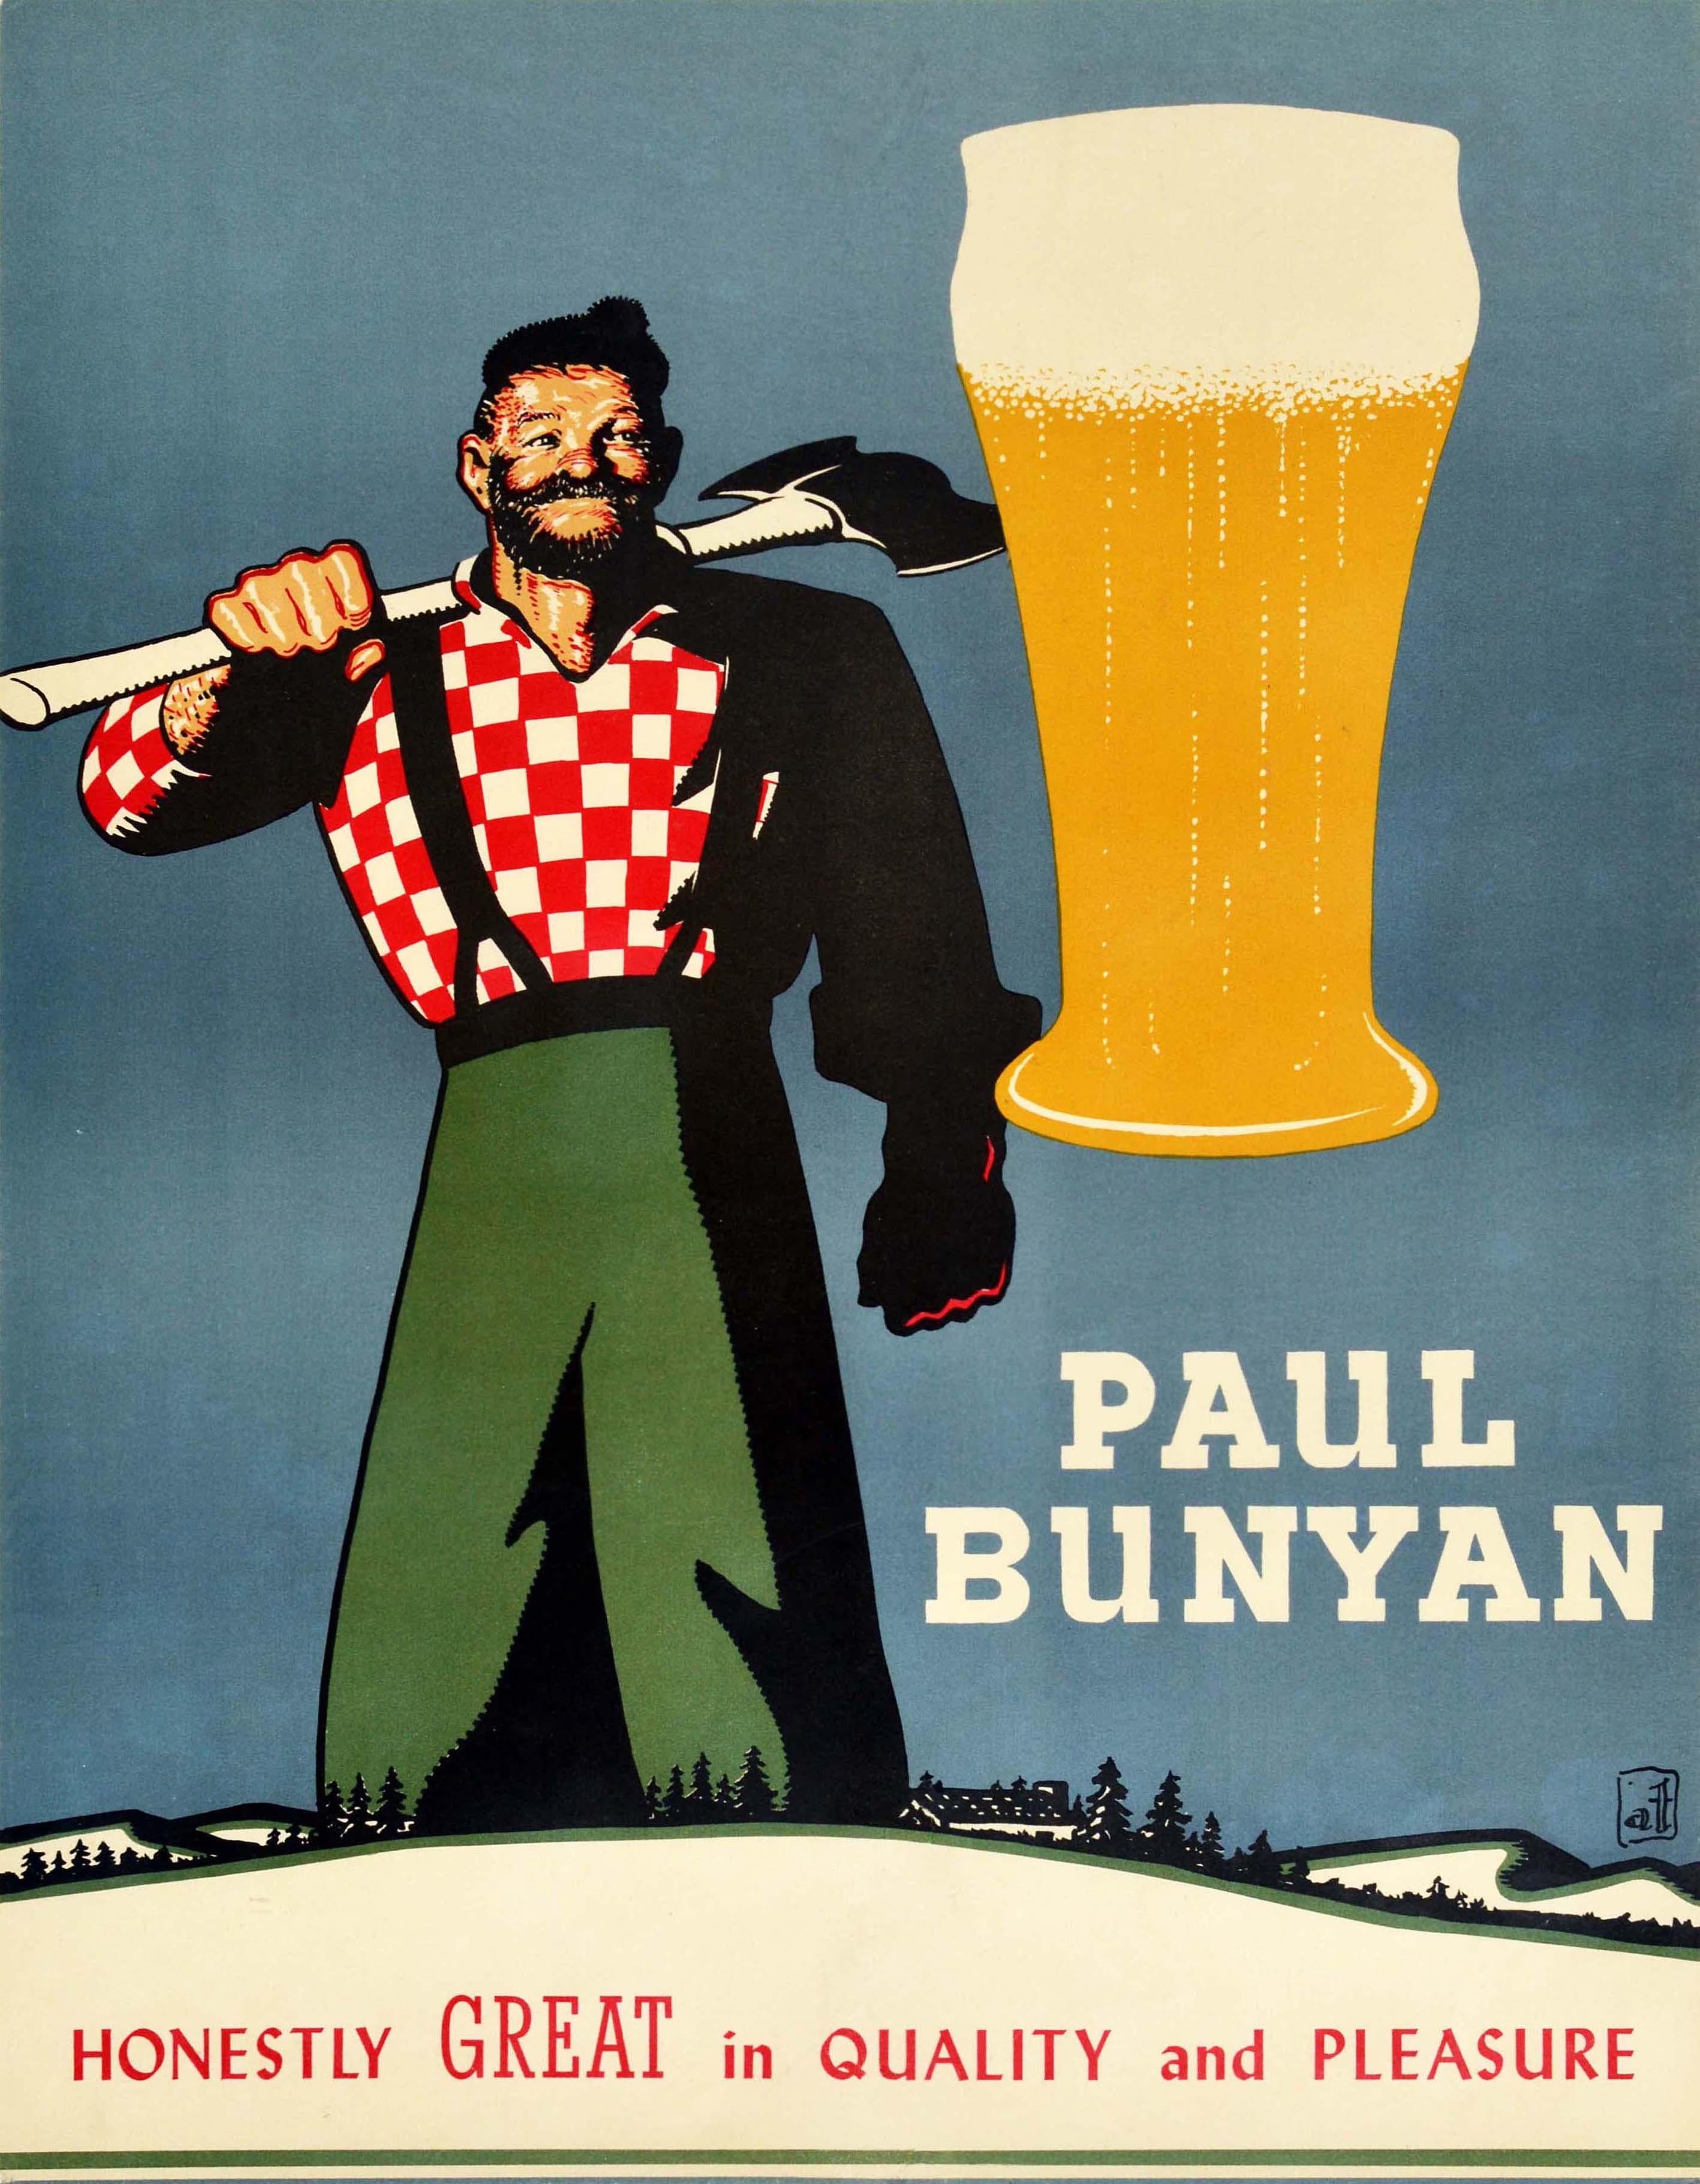 Unknown Print - Original Vintage Poster Paul Bunyan Honestly Great Quality & Pleasure Beer Drink